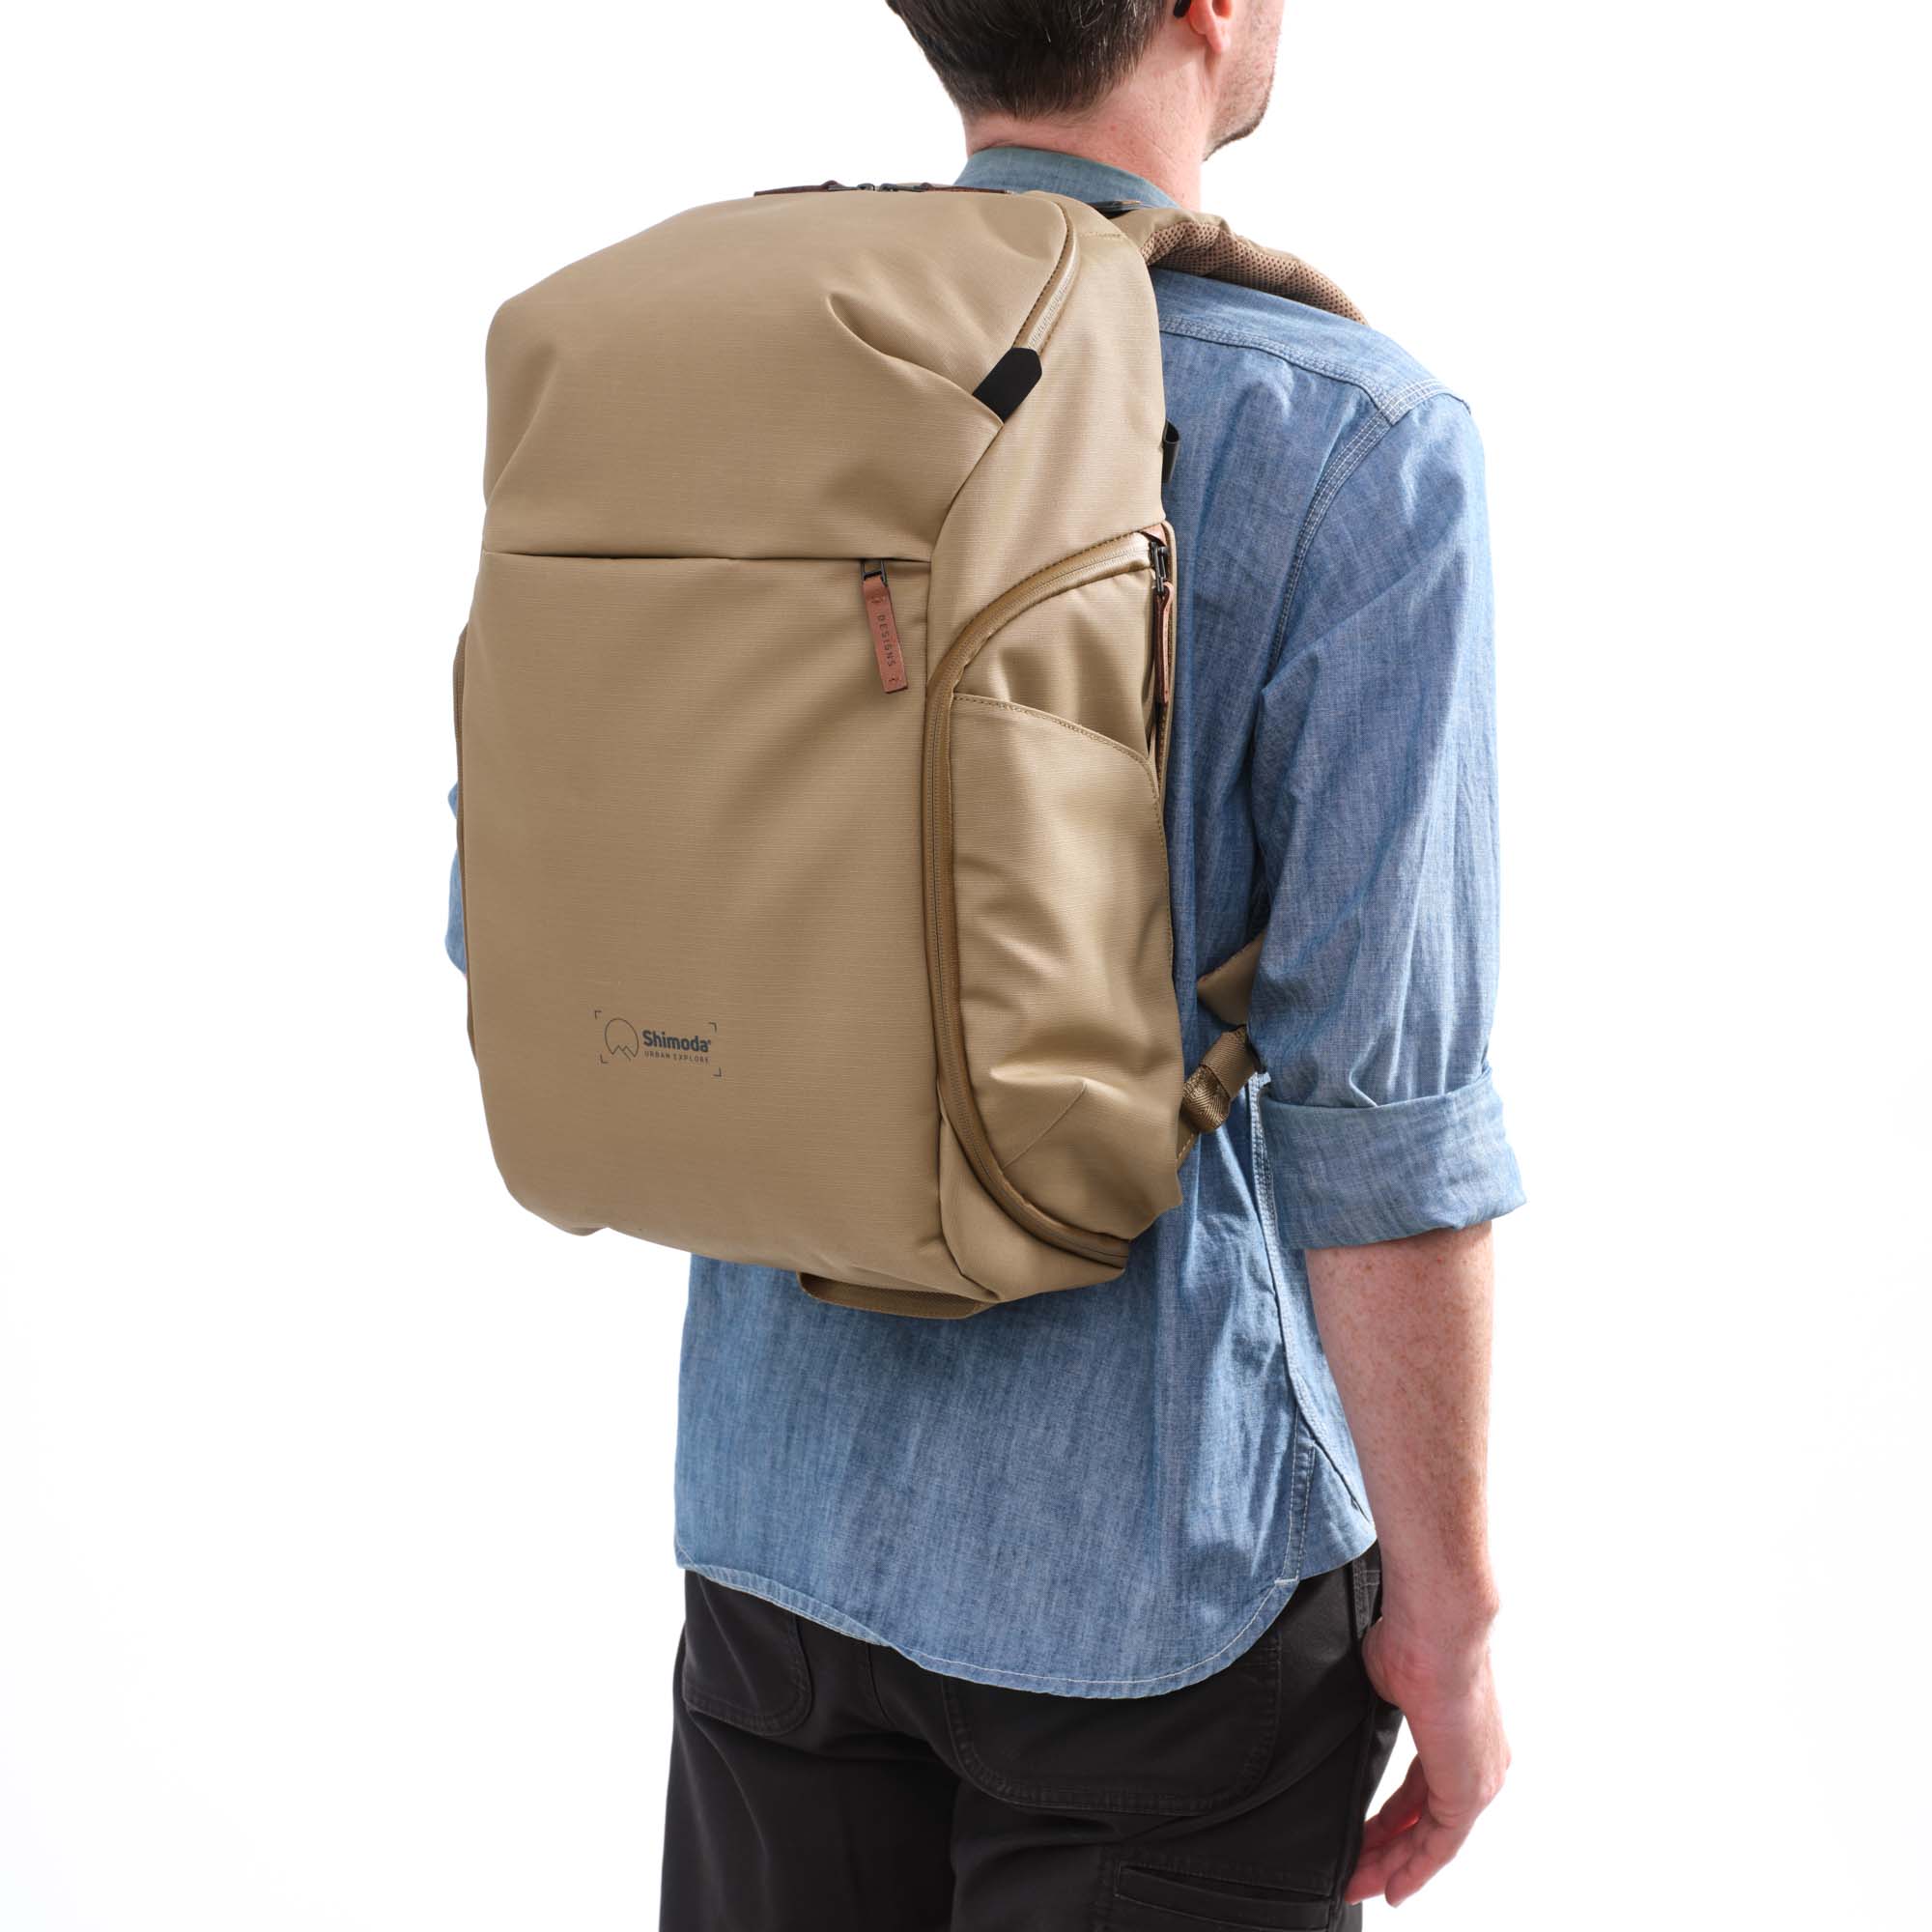 Shimoda Designs Explore 25 Rucksack in Beige, Lifestyle Foto des Rucksacks auf einer Person